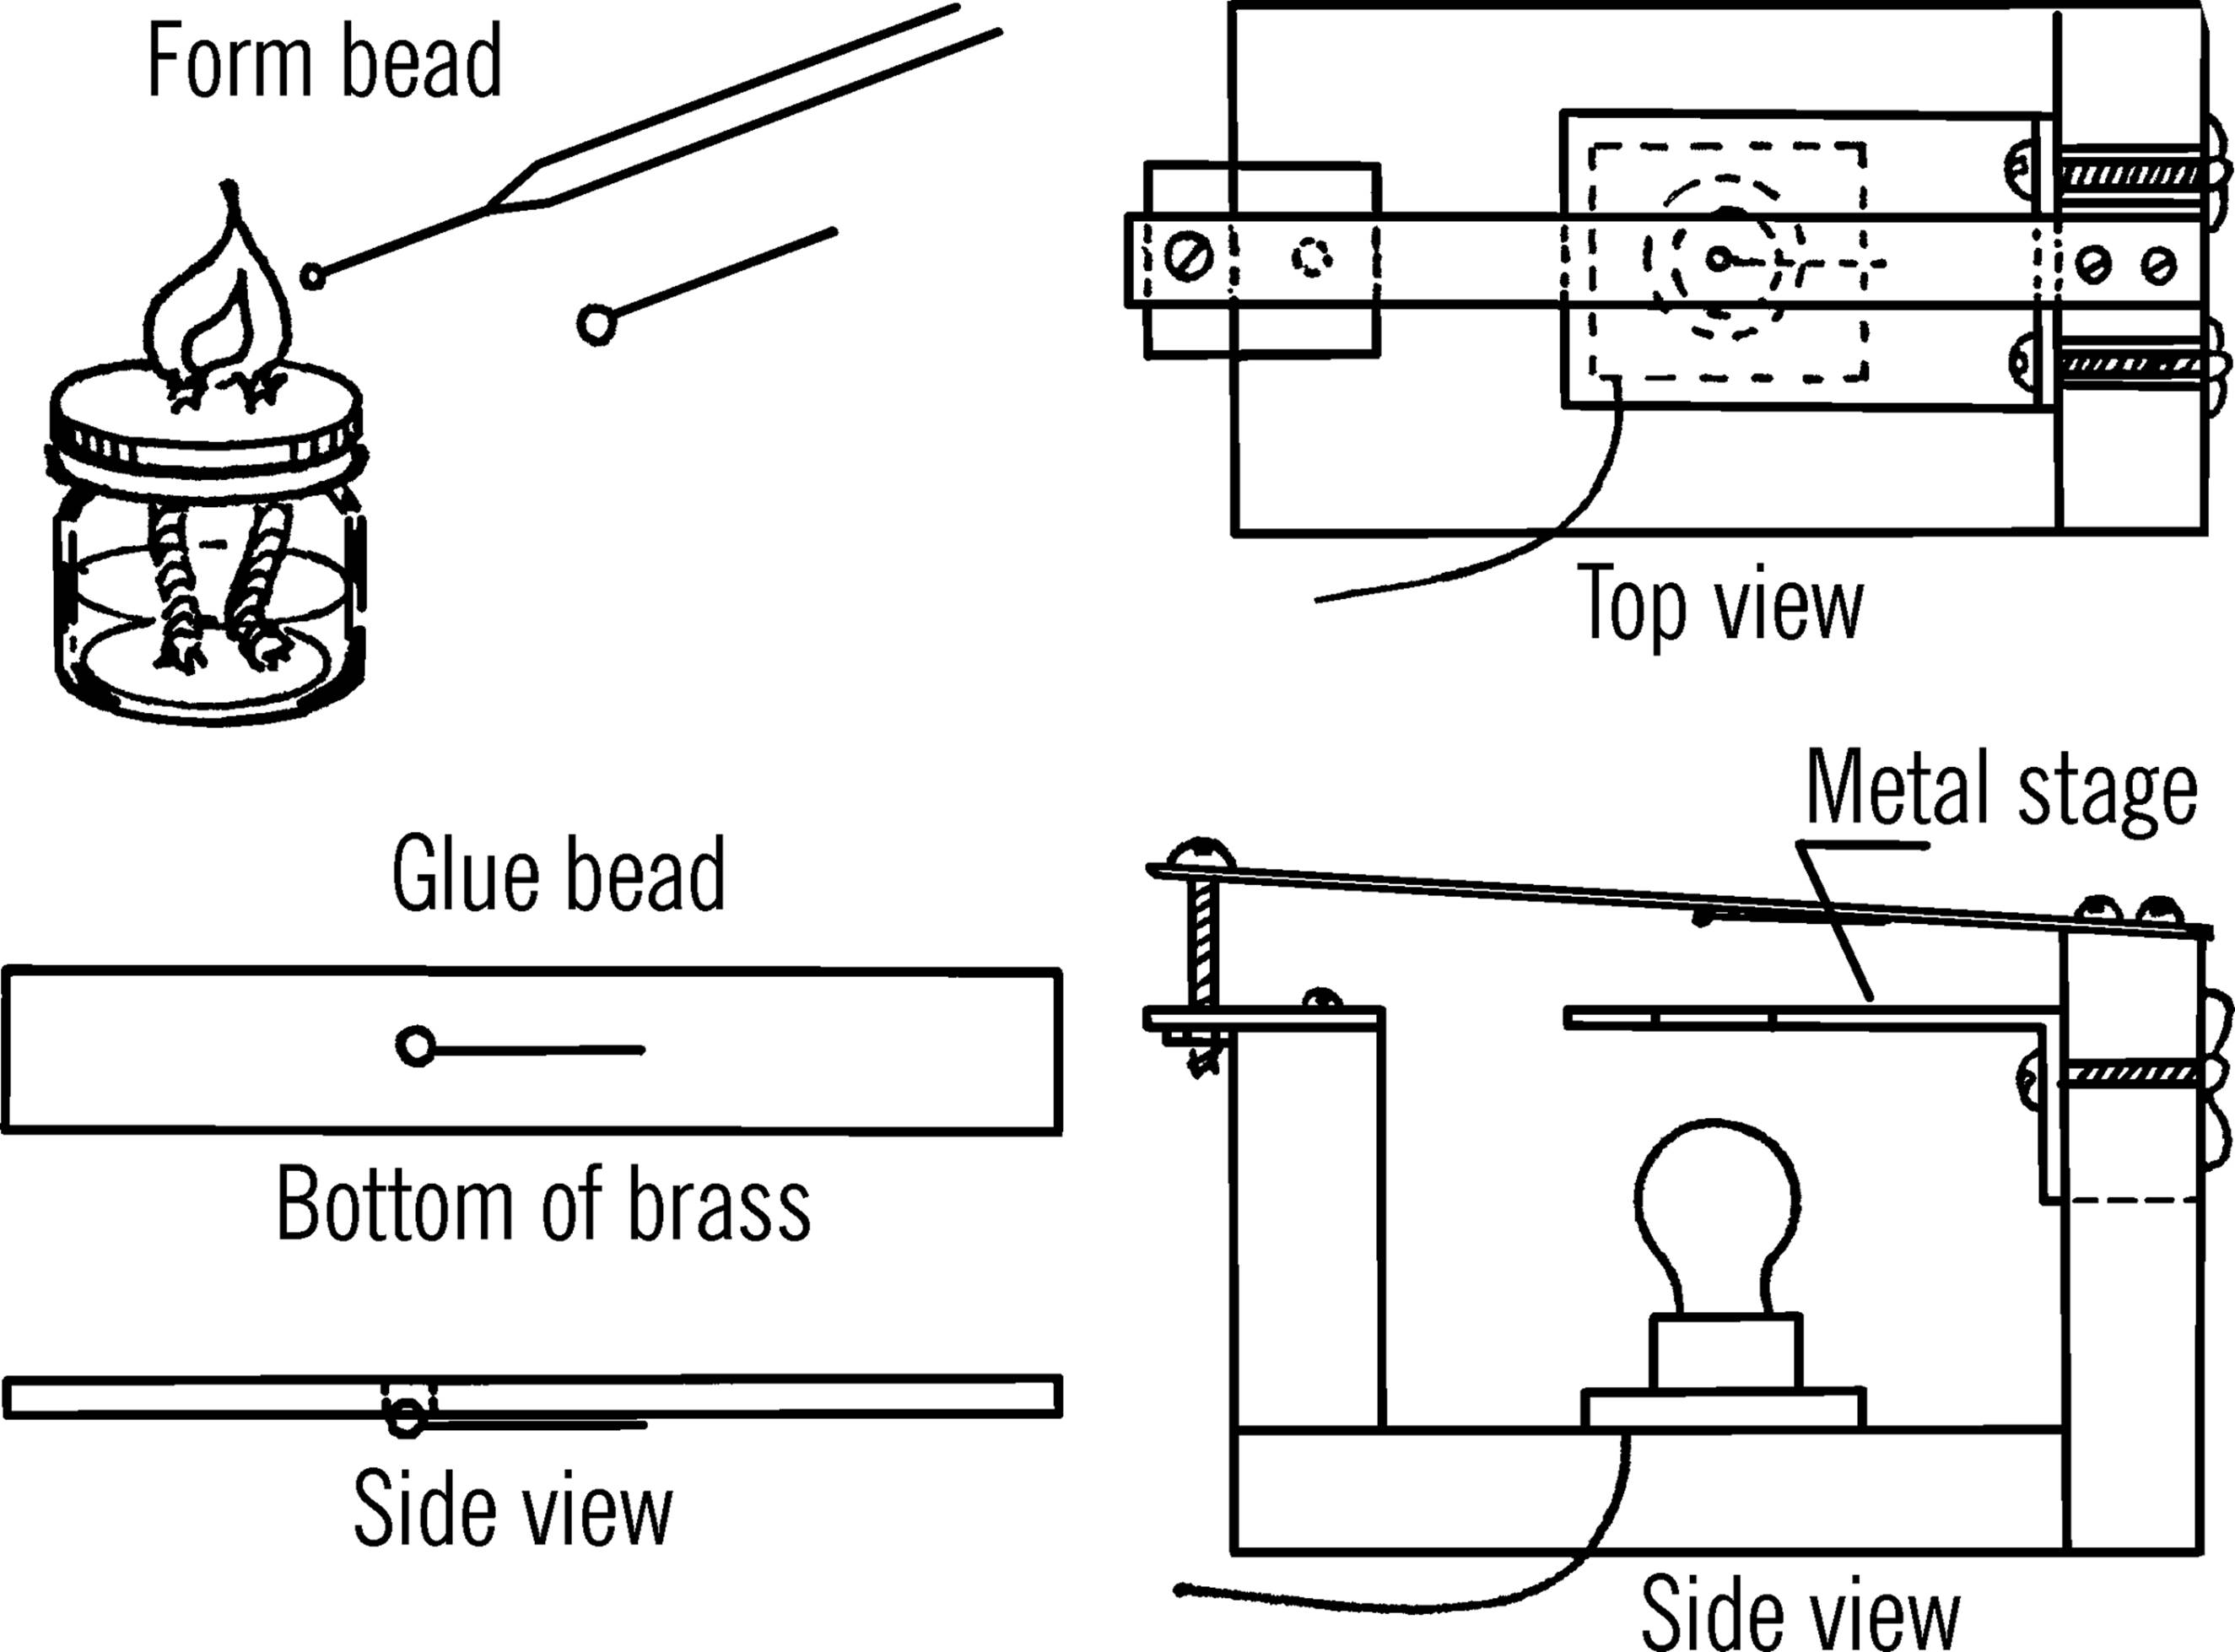 Leeuwenhoek-type microscope.